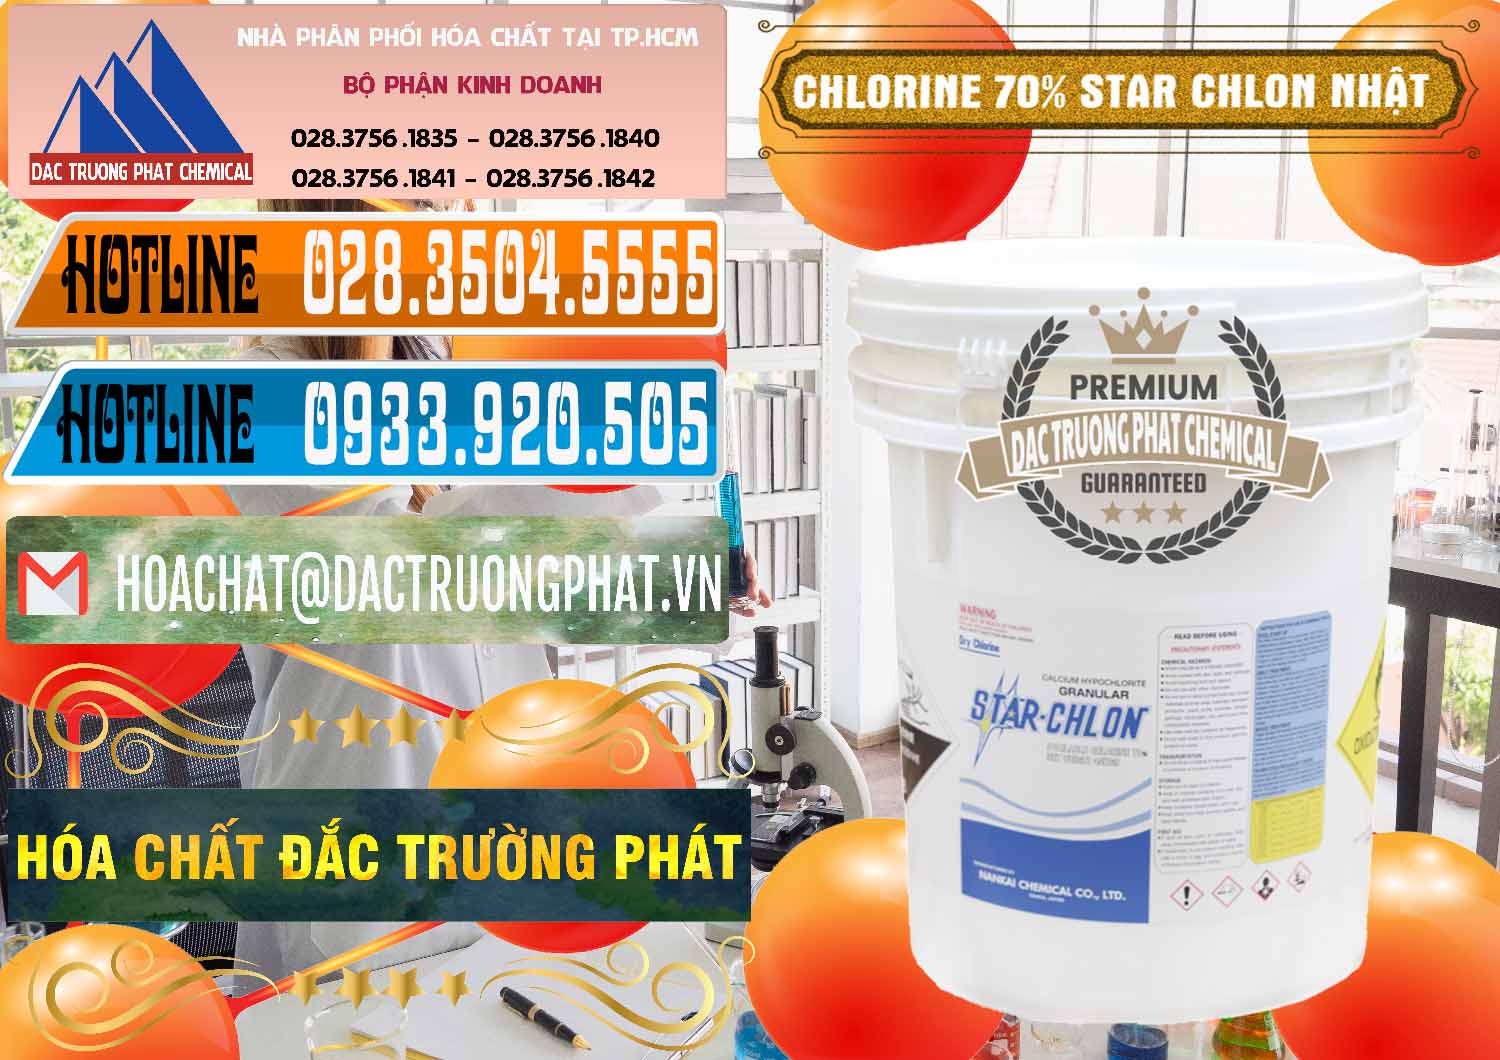 Nơi chuyên cung ứng _ bán Clorin – Chlorine 70% Star Chlon Nhật Bản Japan - 0243 - Cty chuyên bán - phân phối hóa chất tại TP.HCM - stmp.net